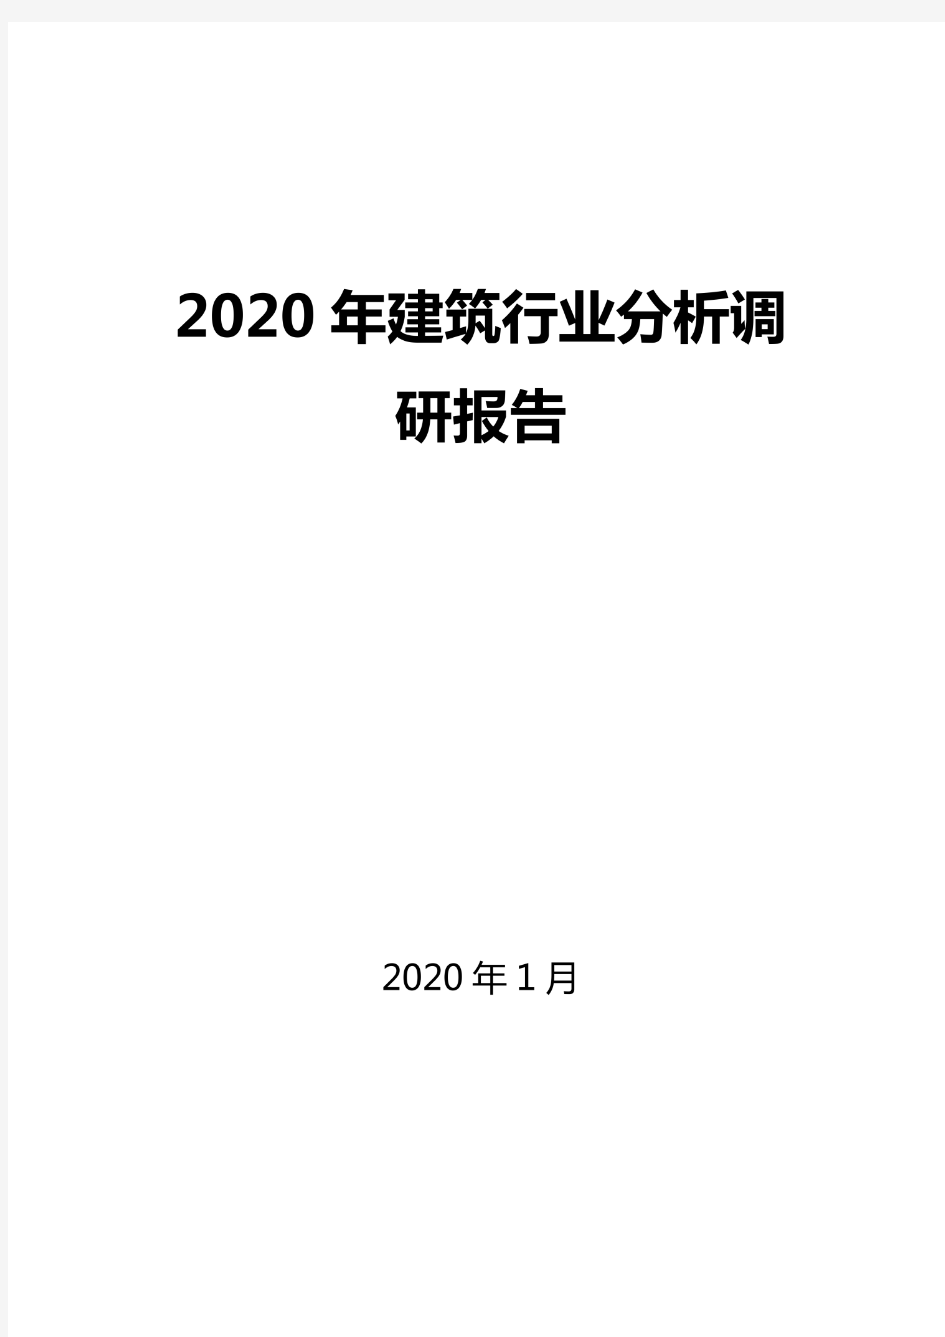 2020建筑行业分析报告